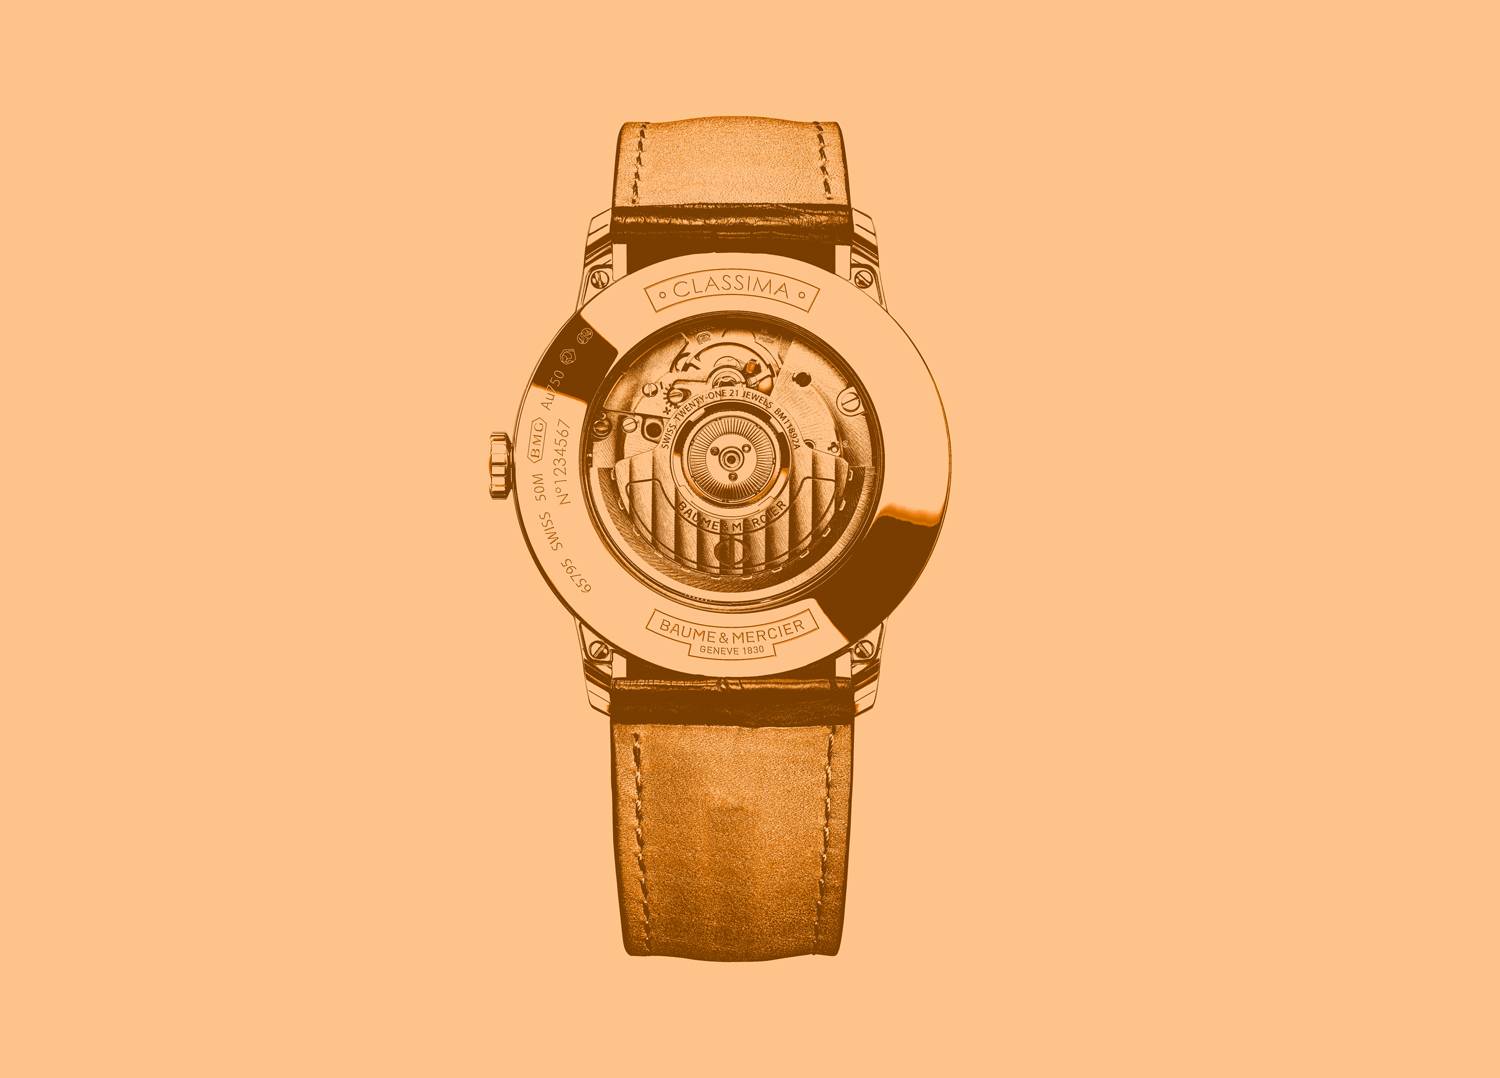 La montre Classima 10271 de Baume & Mercier